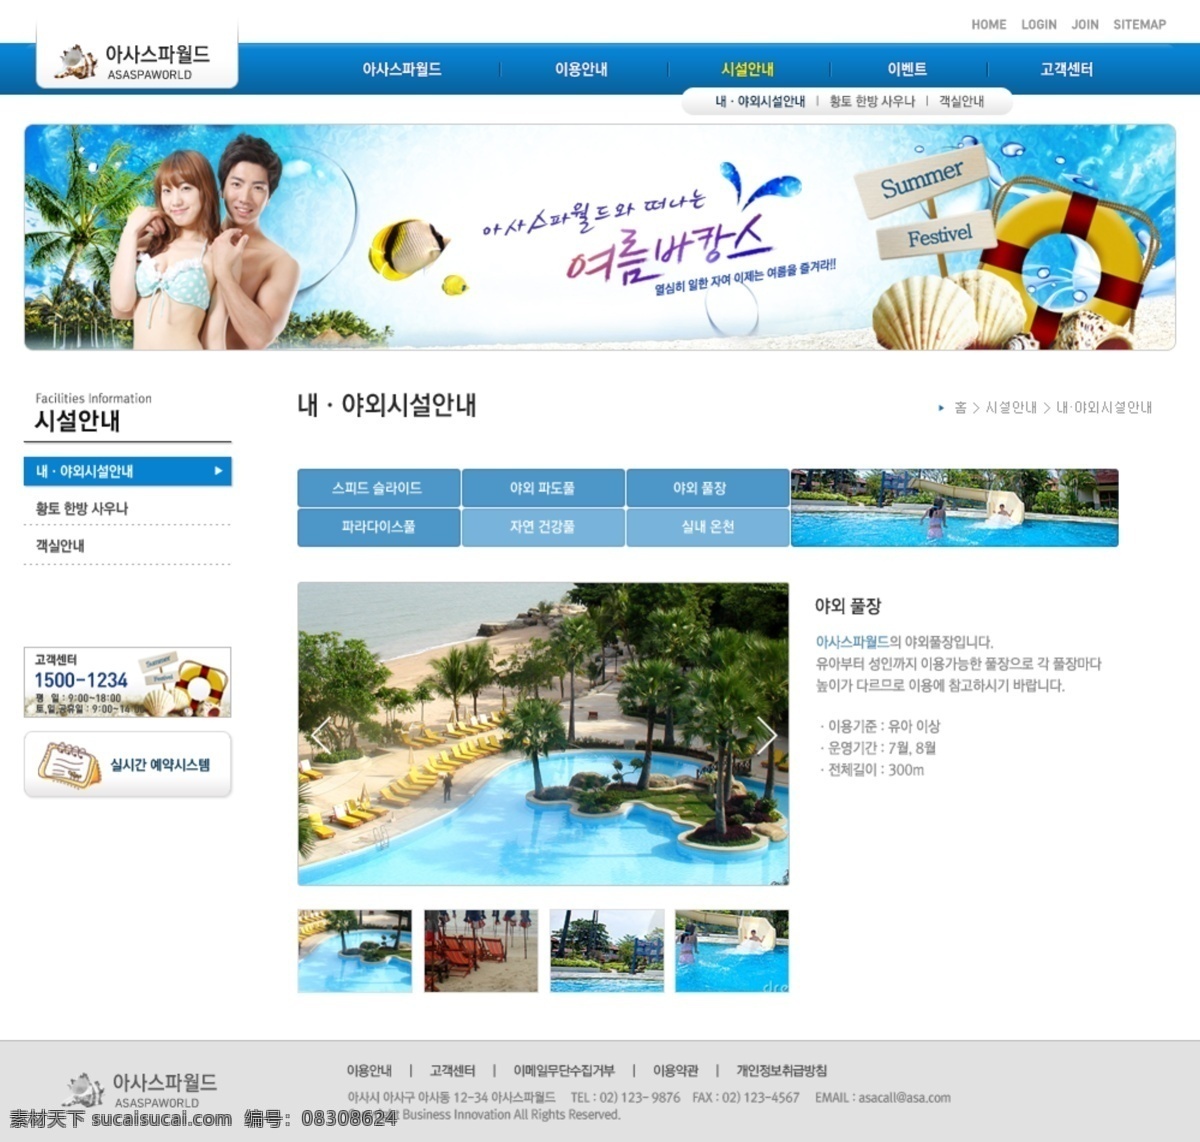 韩国 精品 网页模板 韩国卡通 韩国美女 卡通风格 蓝色模板 精品模板 韩国可爱模板 网页素材